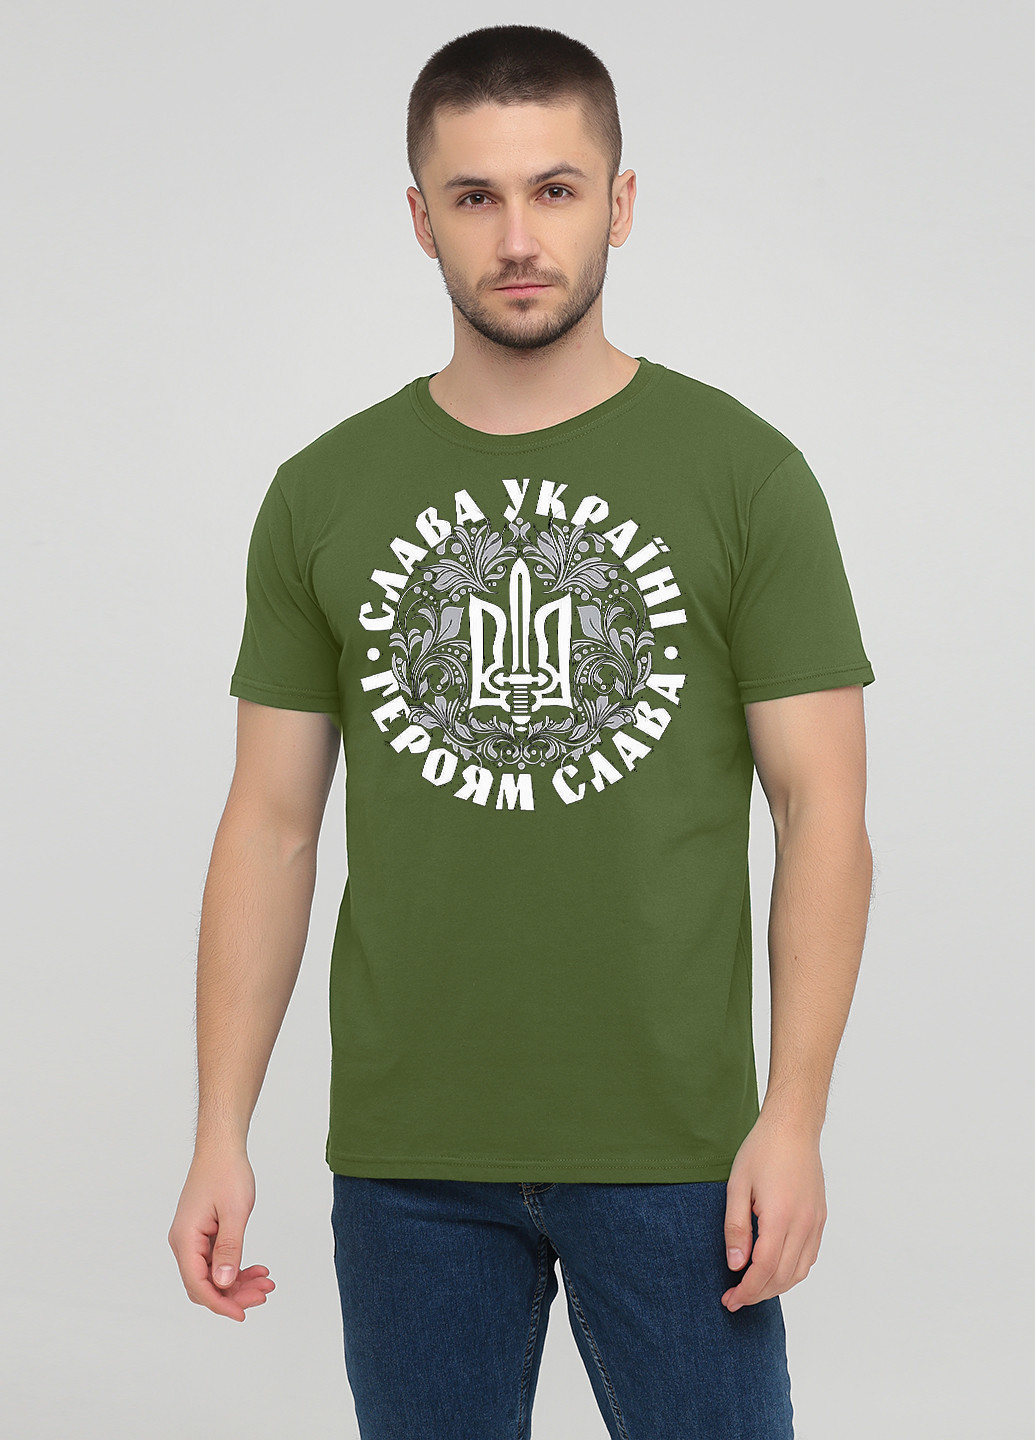 Оливковая футболка мужская м385-24 оливковая Malta